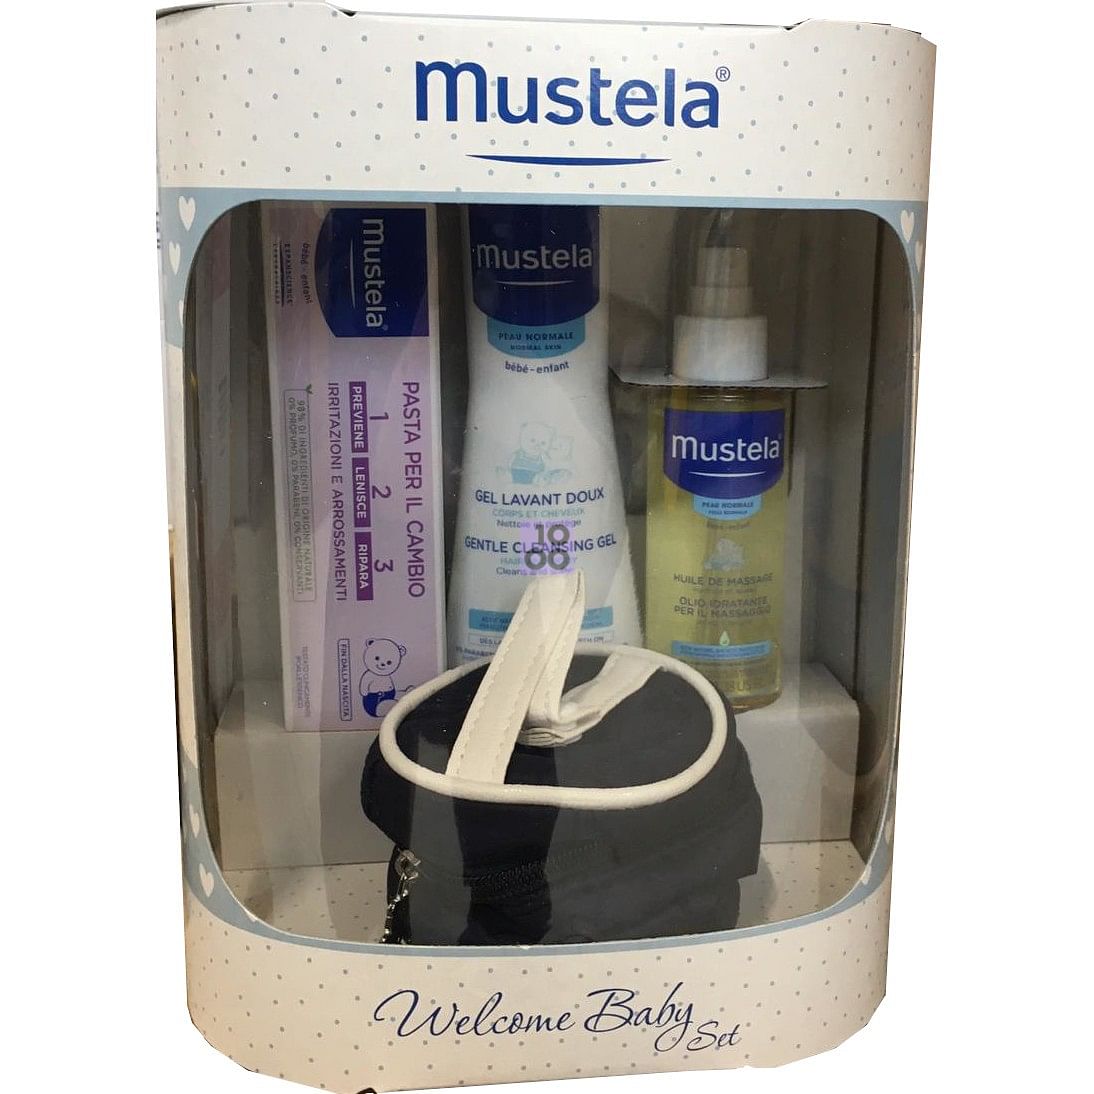 Mustela Welcome Baby Set: Utilizzo, effetti collaterali e prezzo